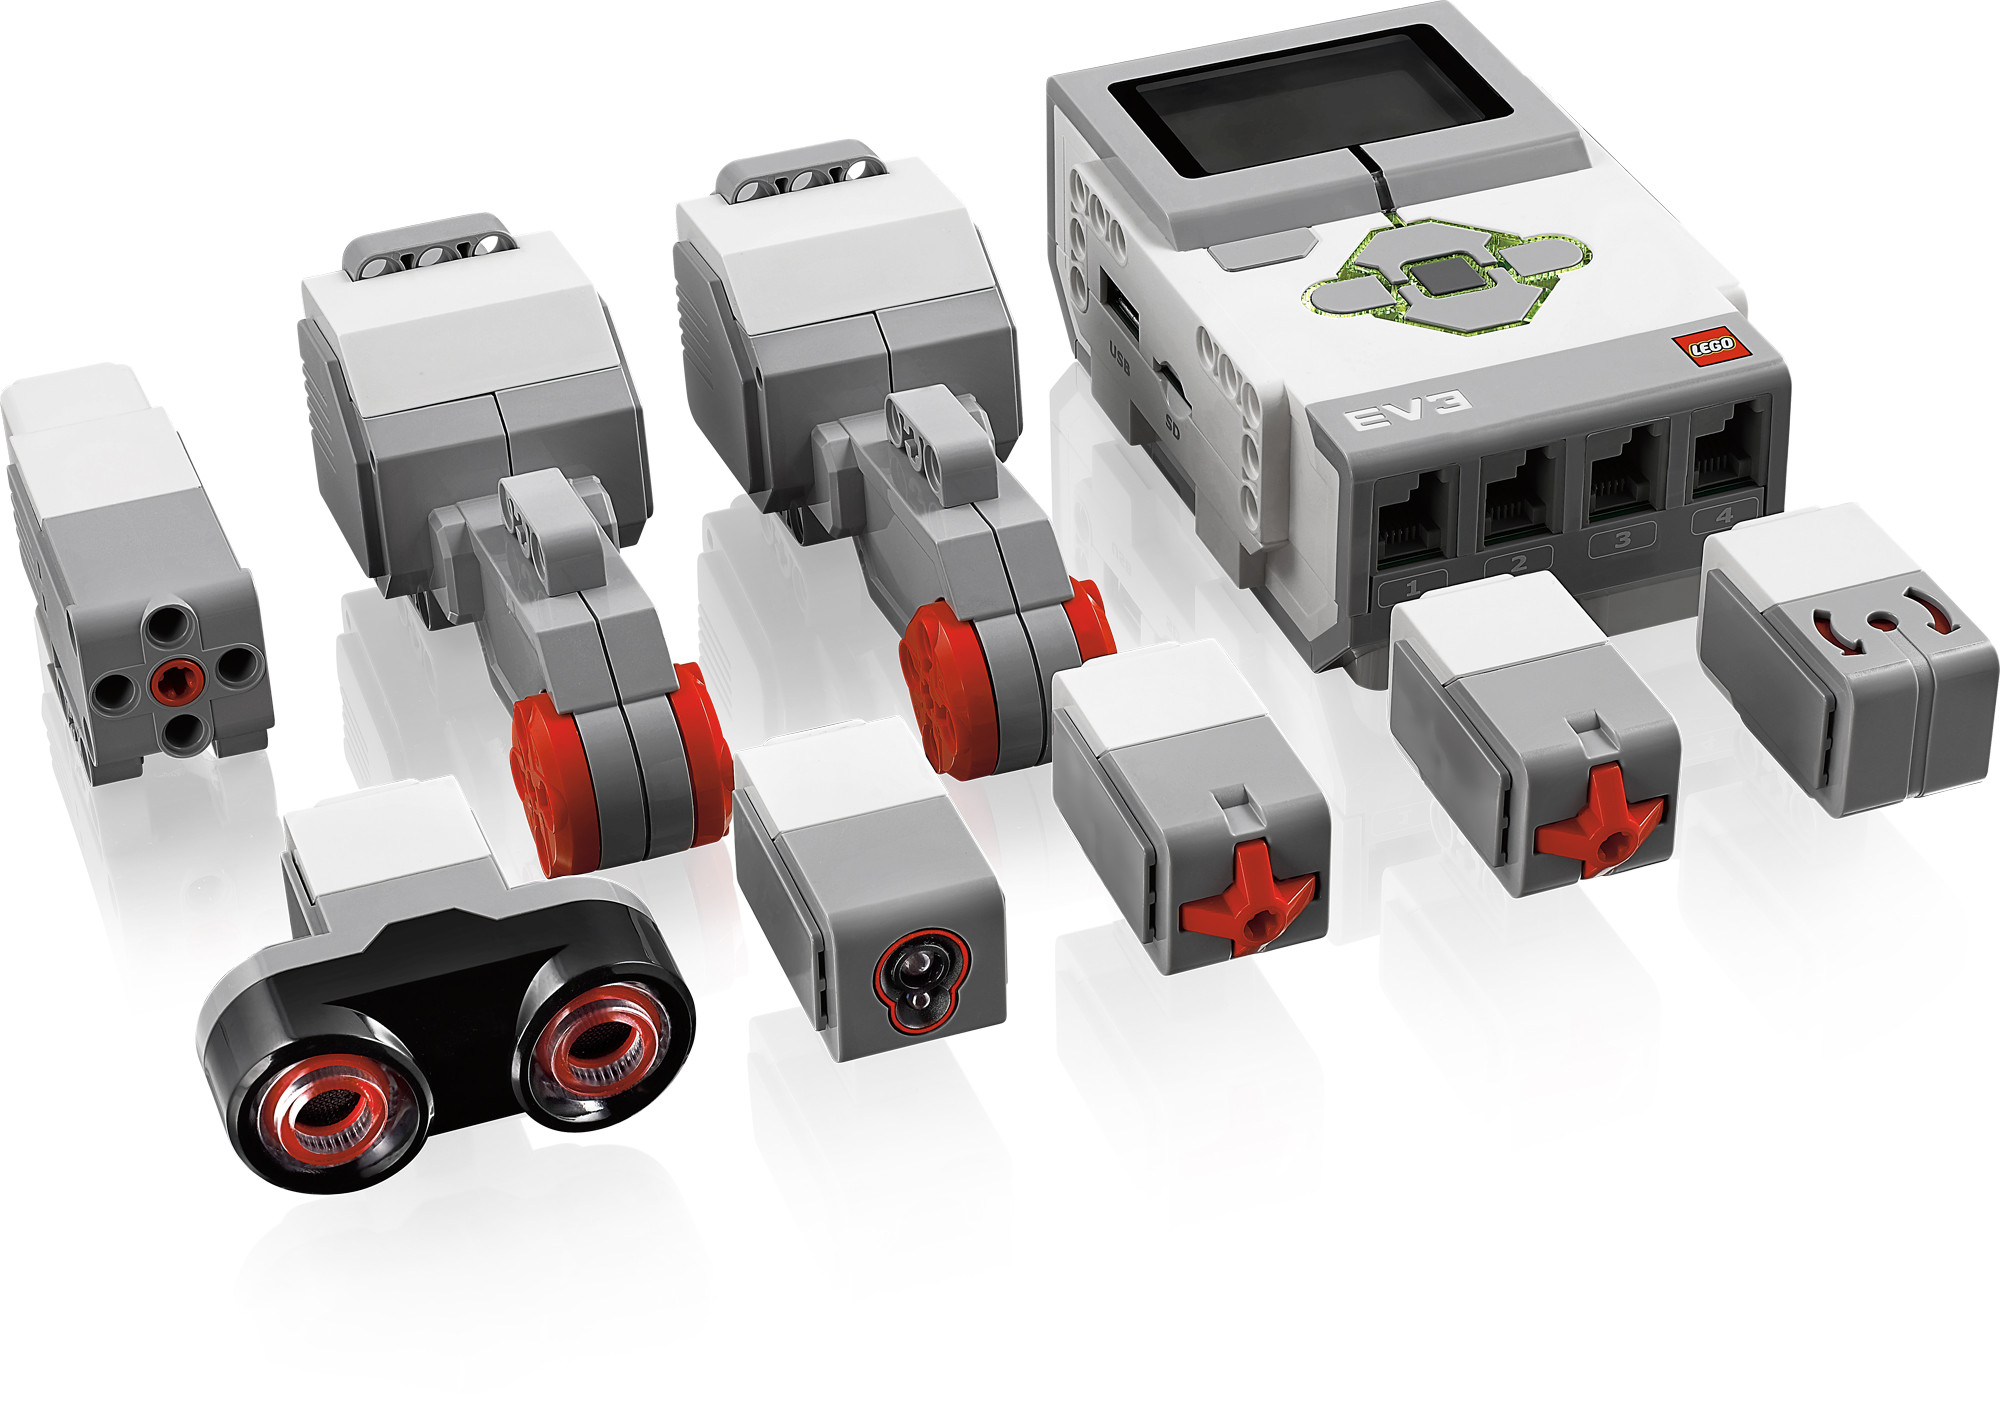 asistencia Creta sopa Kit básico Lego Mindstorms Education EV3 software - Droide Comunidad